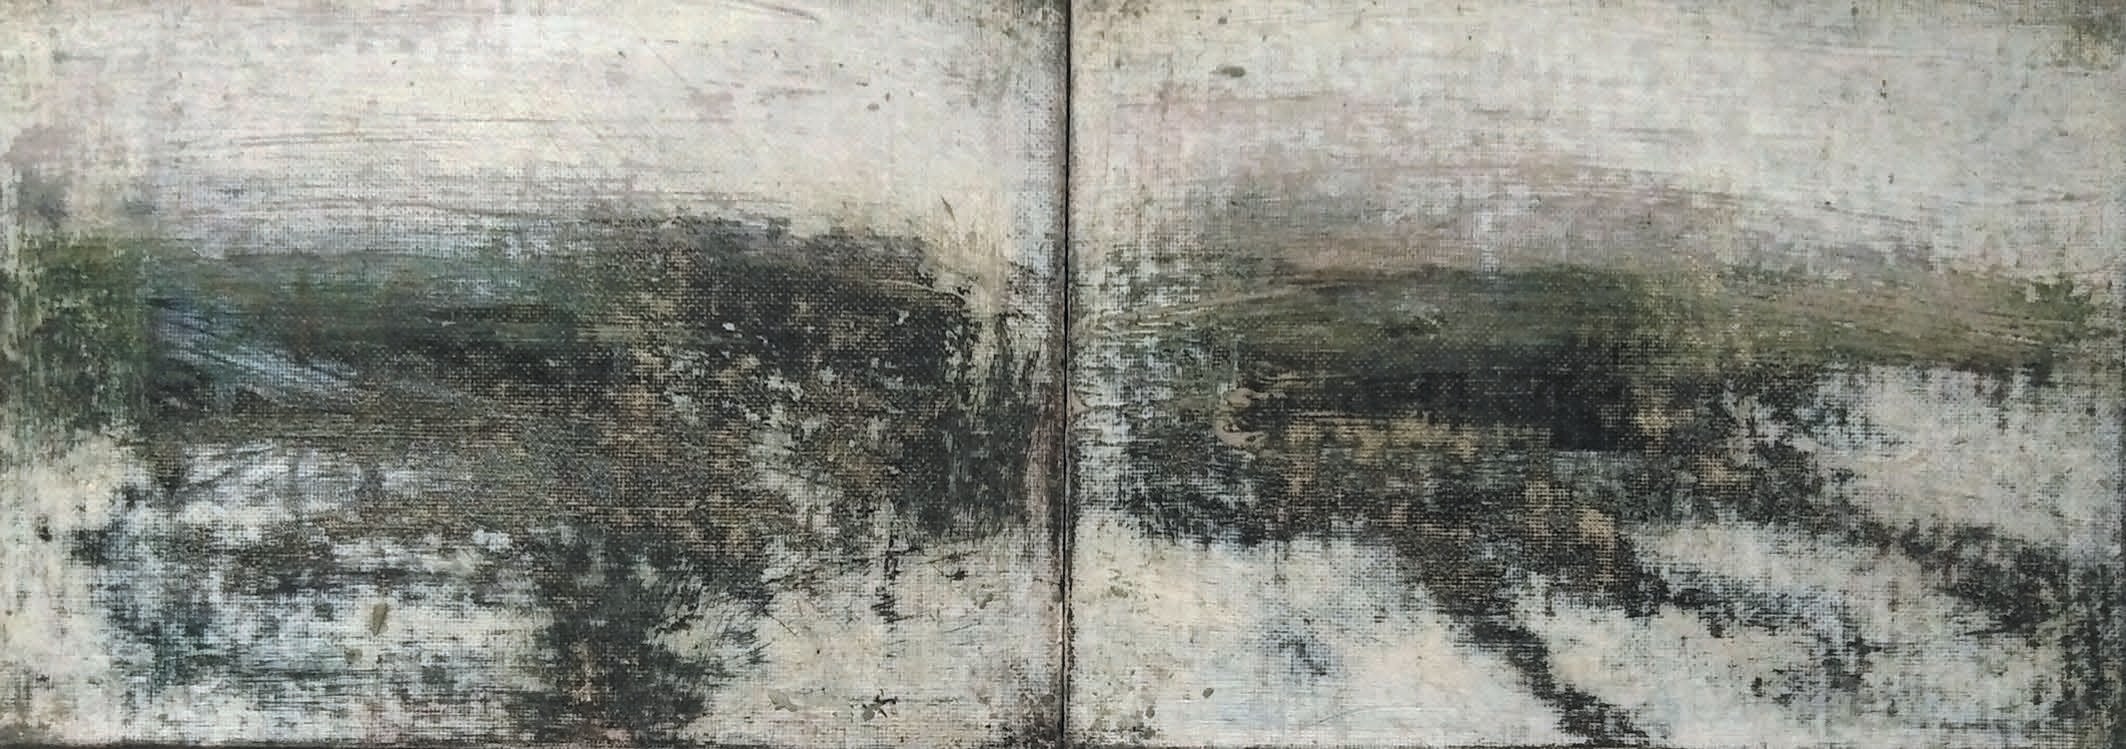 Massimo Romani, Landscape (2)- 2019 - olio su cartone telato - 13 x 36 cm